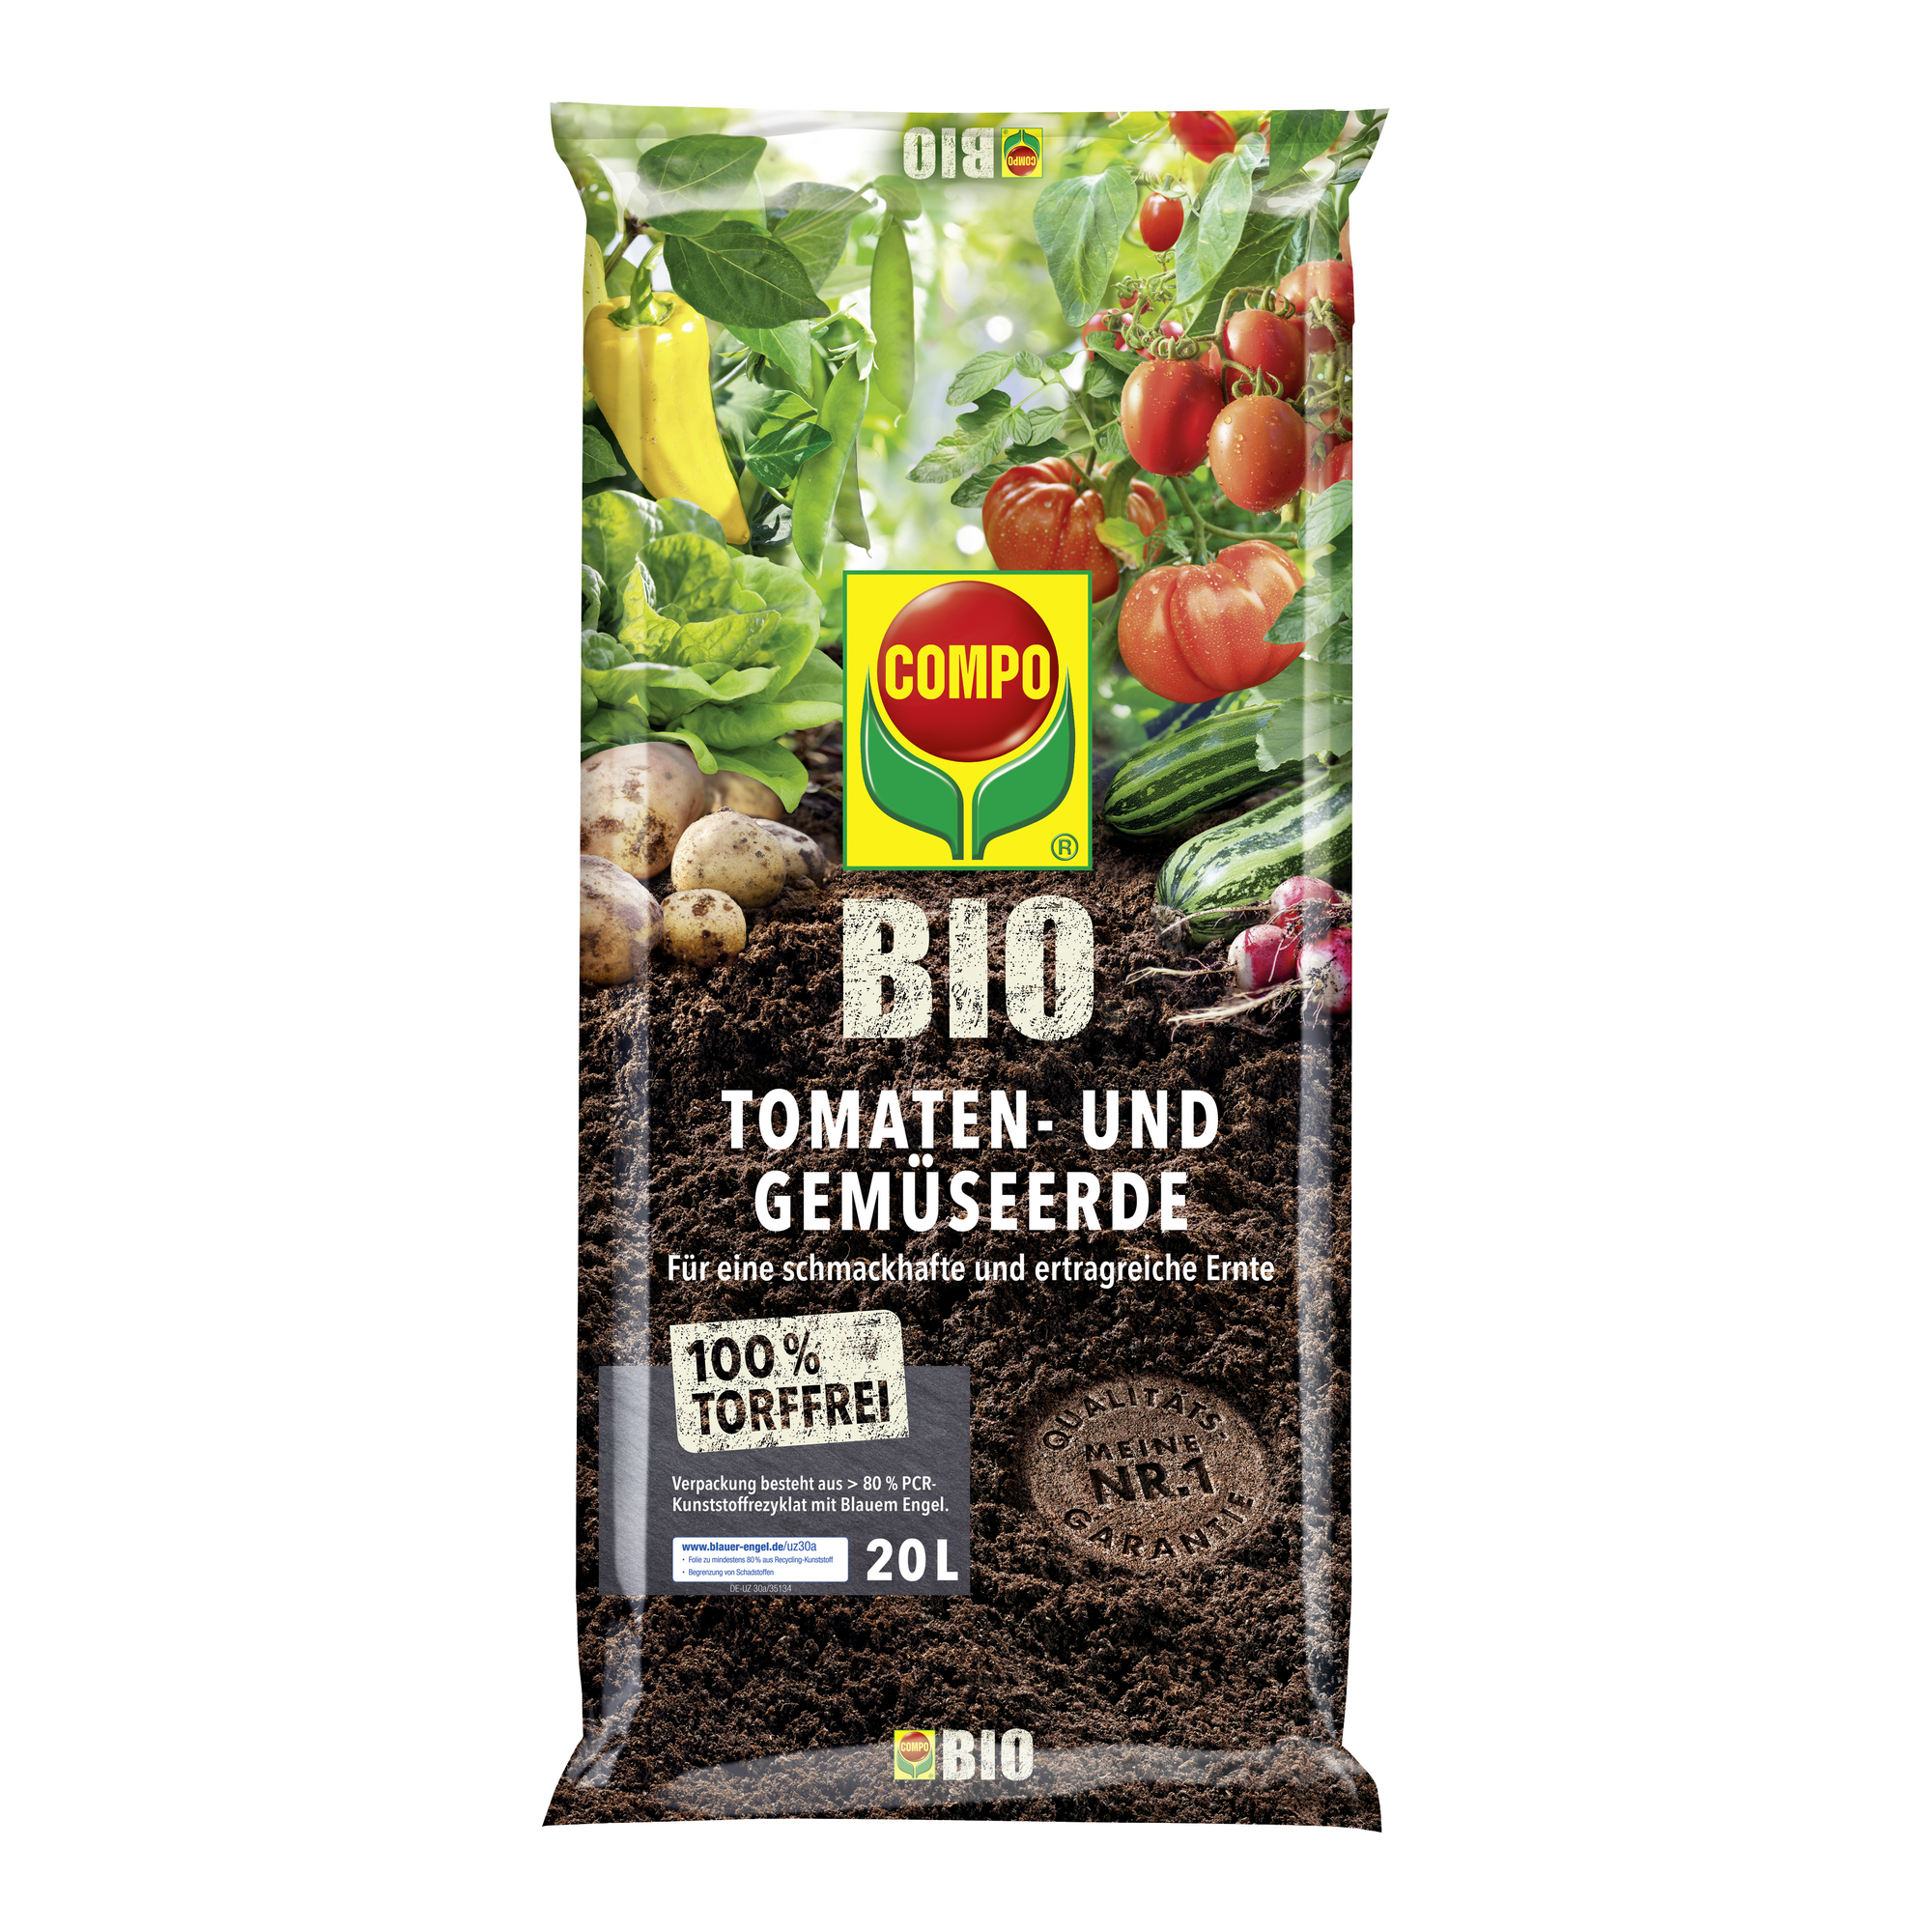 Bio-Tomaten- und Gemüseerde torffrei 20 l + product picture